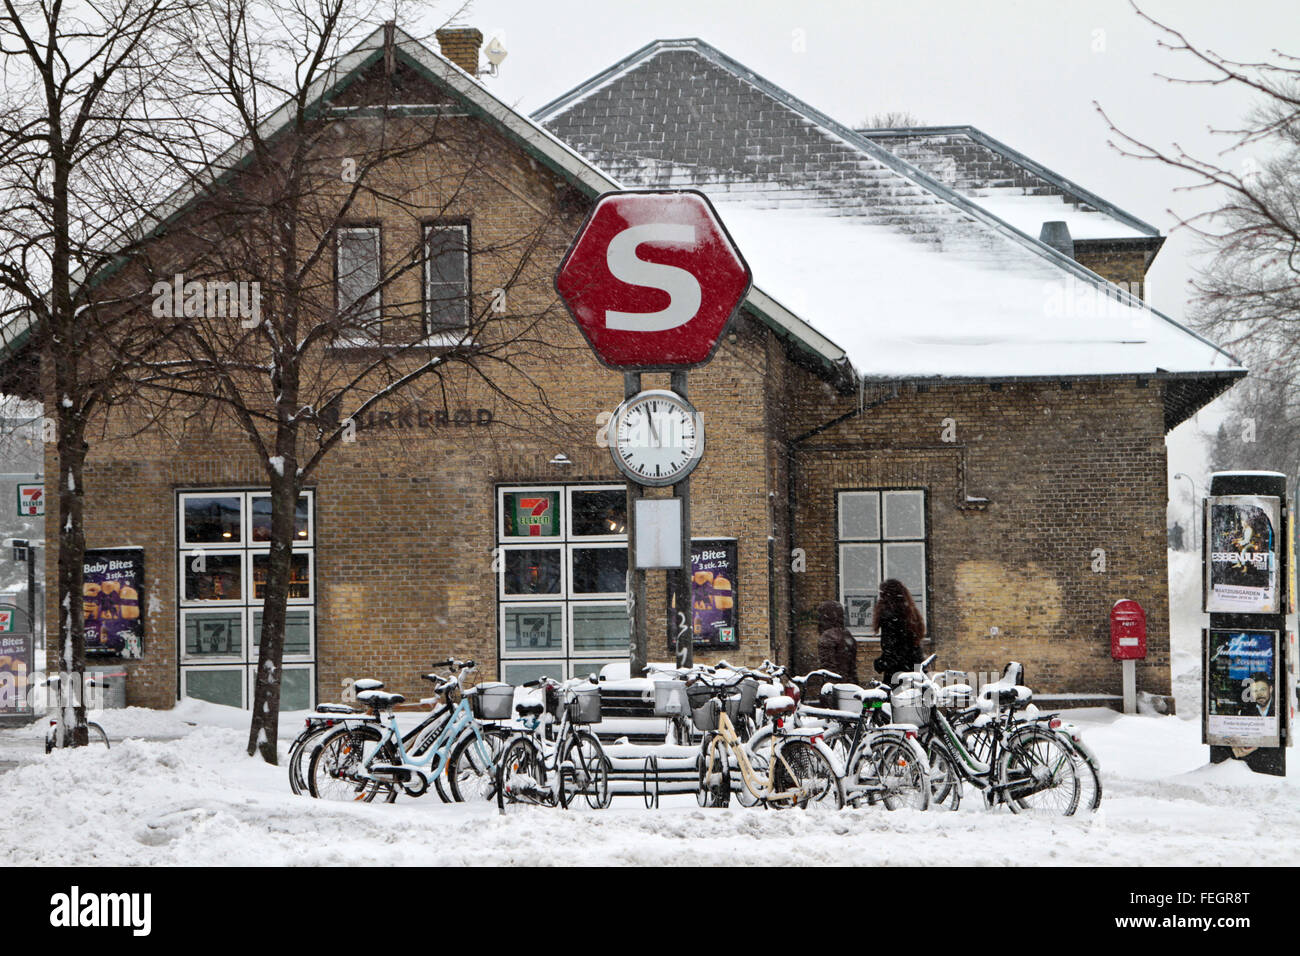 Inverno in un villaggio in Danimarca con un sacco di neve davanti alla stazione ferroviaria (S) e parcheggio bici Foto Stock